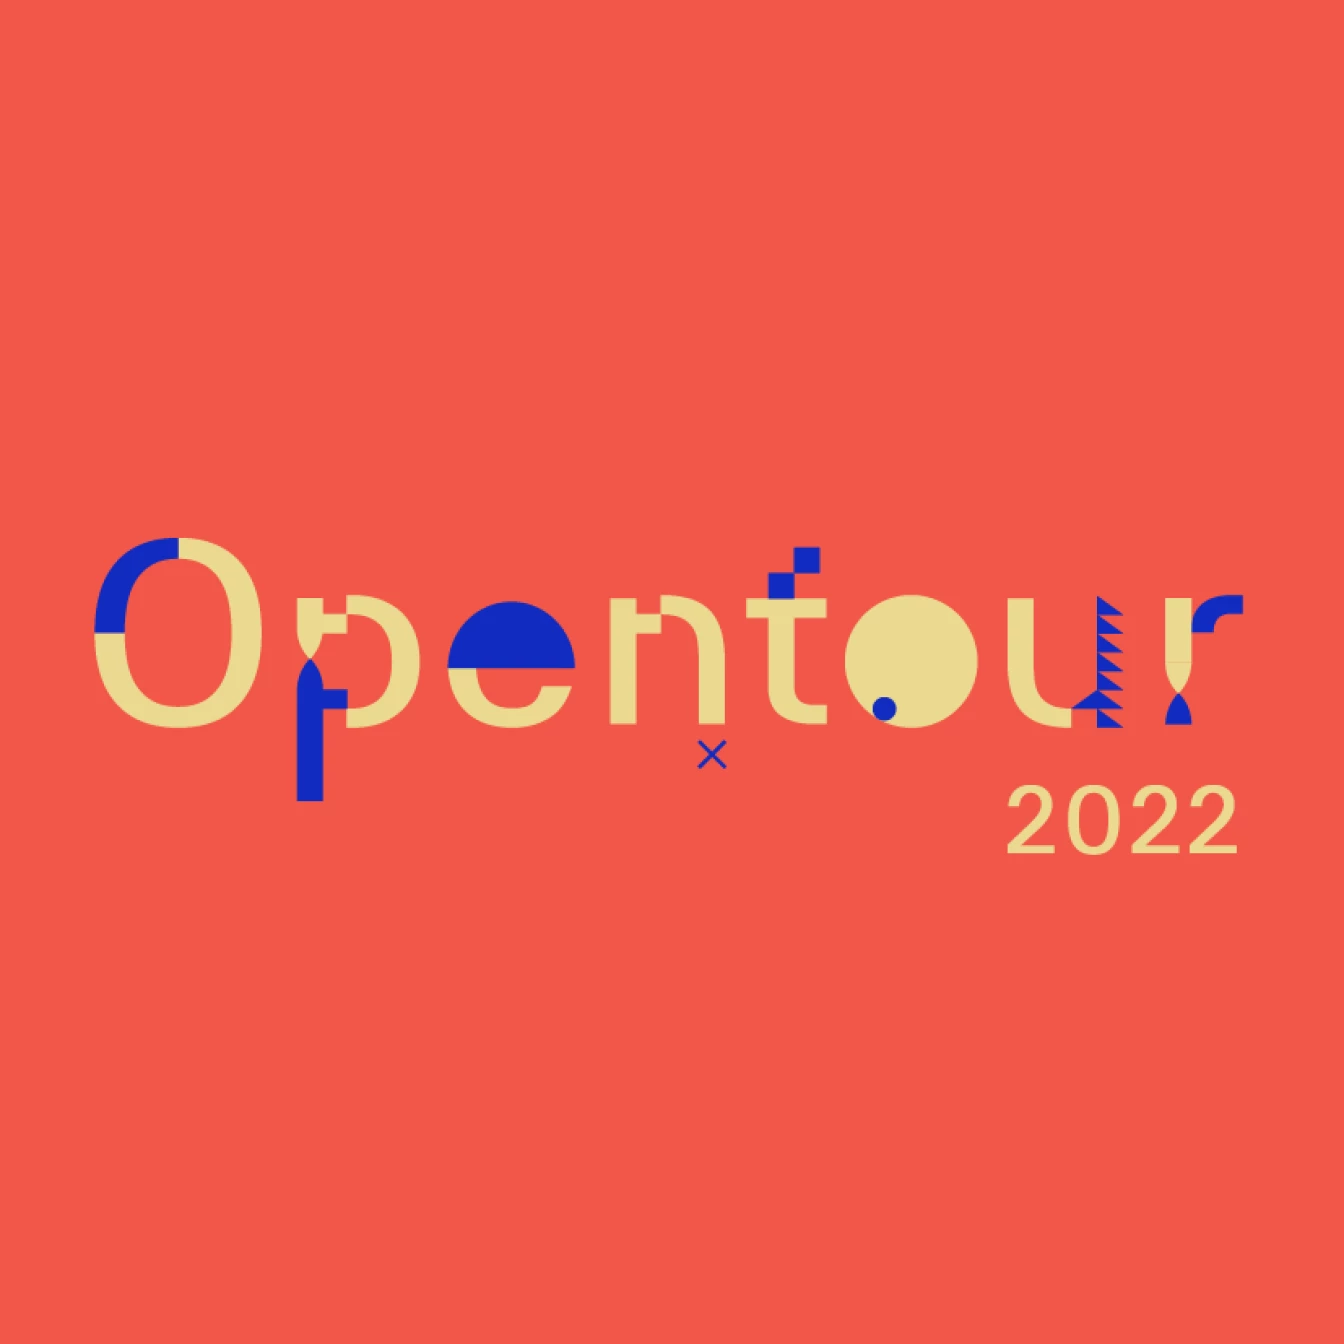 Opentour 2022